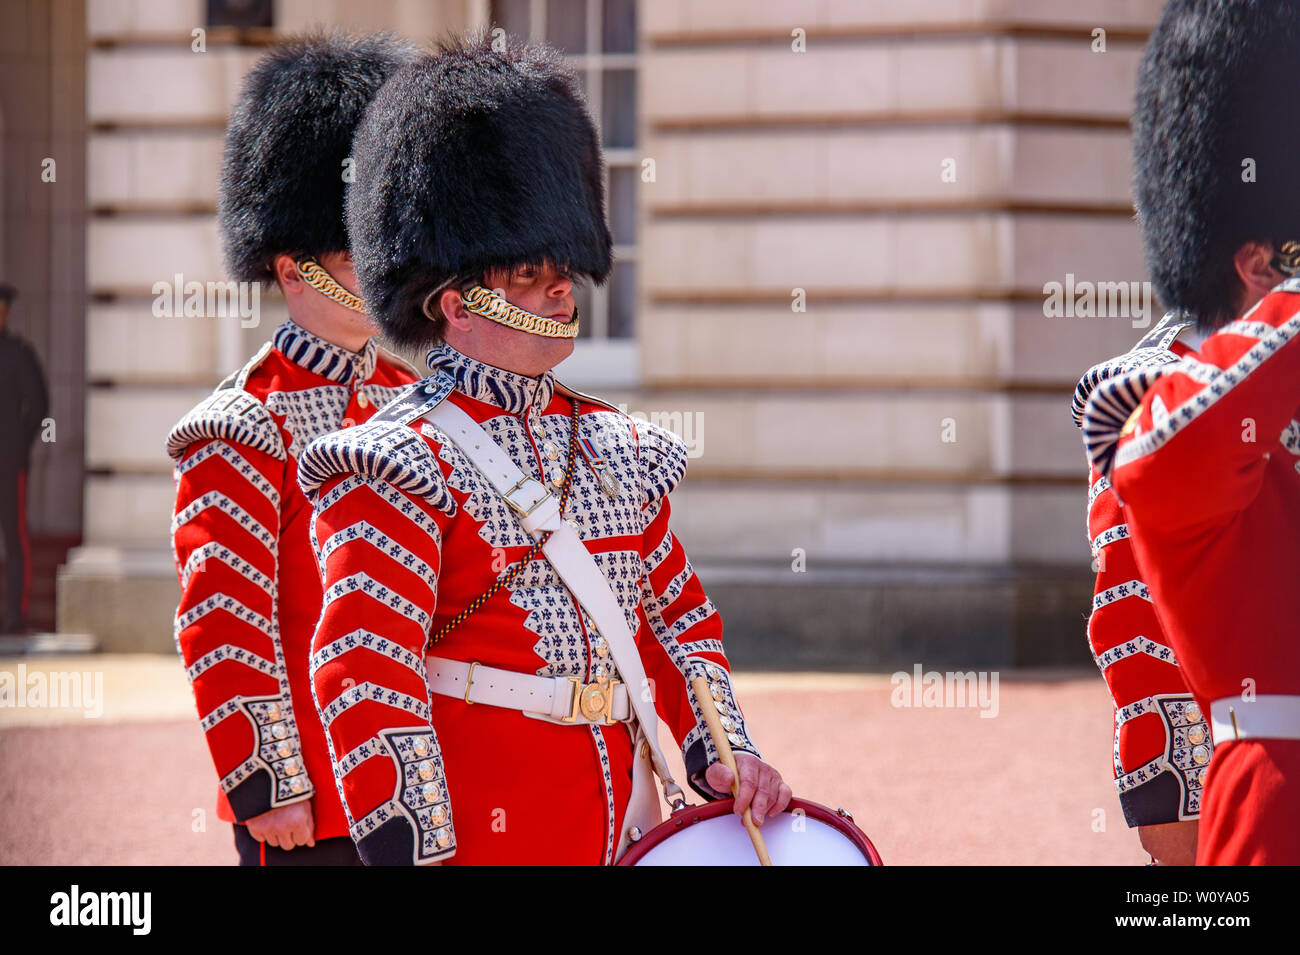 Ceremonia de cambio de guardia en la explanada del Palacio de Buckingham, Londres, Reino Unido. Foto de stock